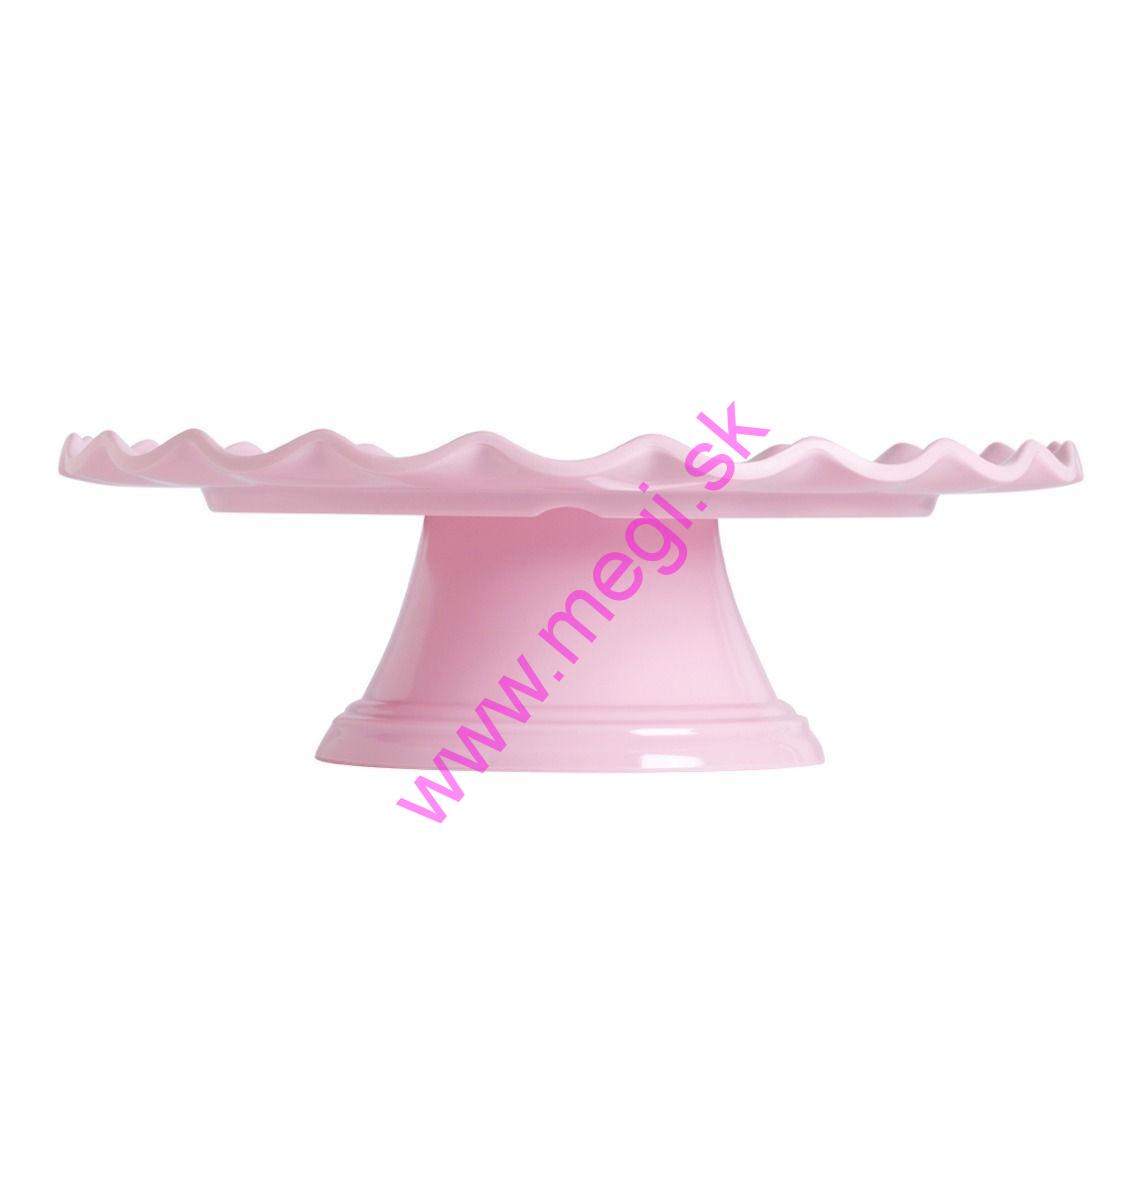 Stojan na tortu štandart vlnkový ružový, O 27,5 x 9 cm, LLC09, ALLC